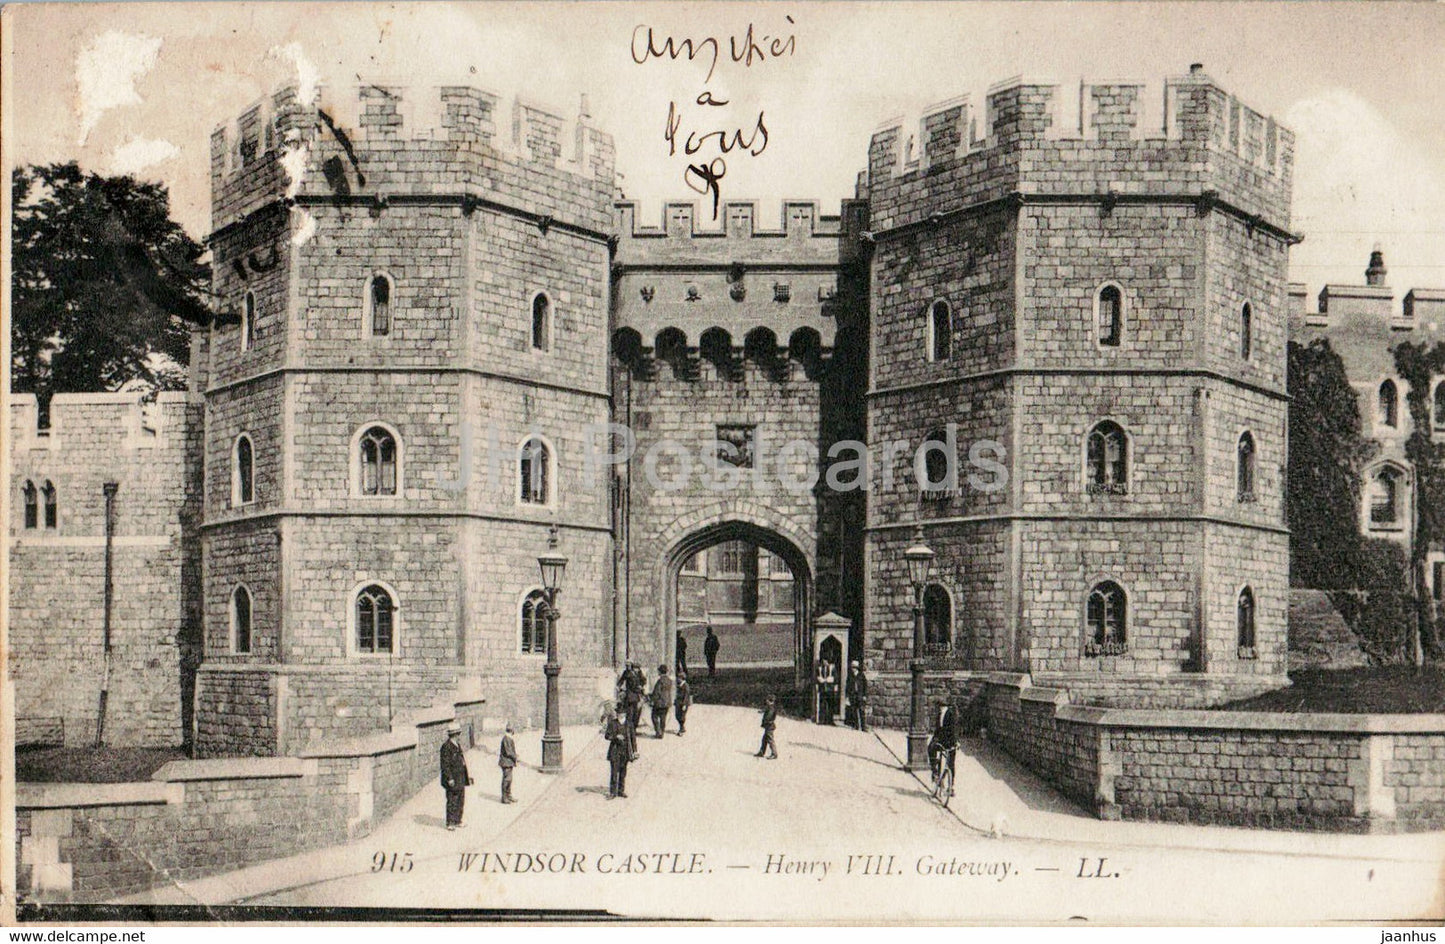 Windsor Castle - Henry VIII Gateway - 915 - old postcard - England - 1910 - United Kingdom - used - JH Postcards